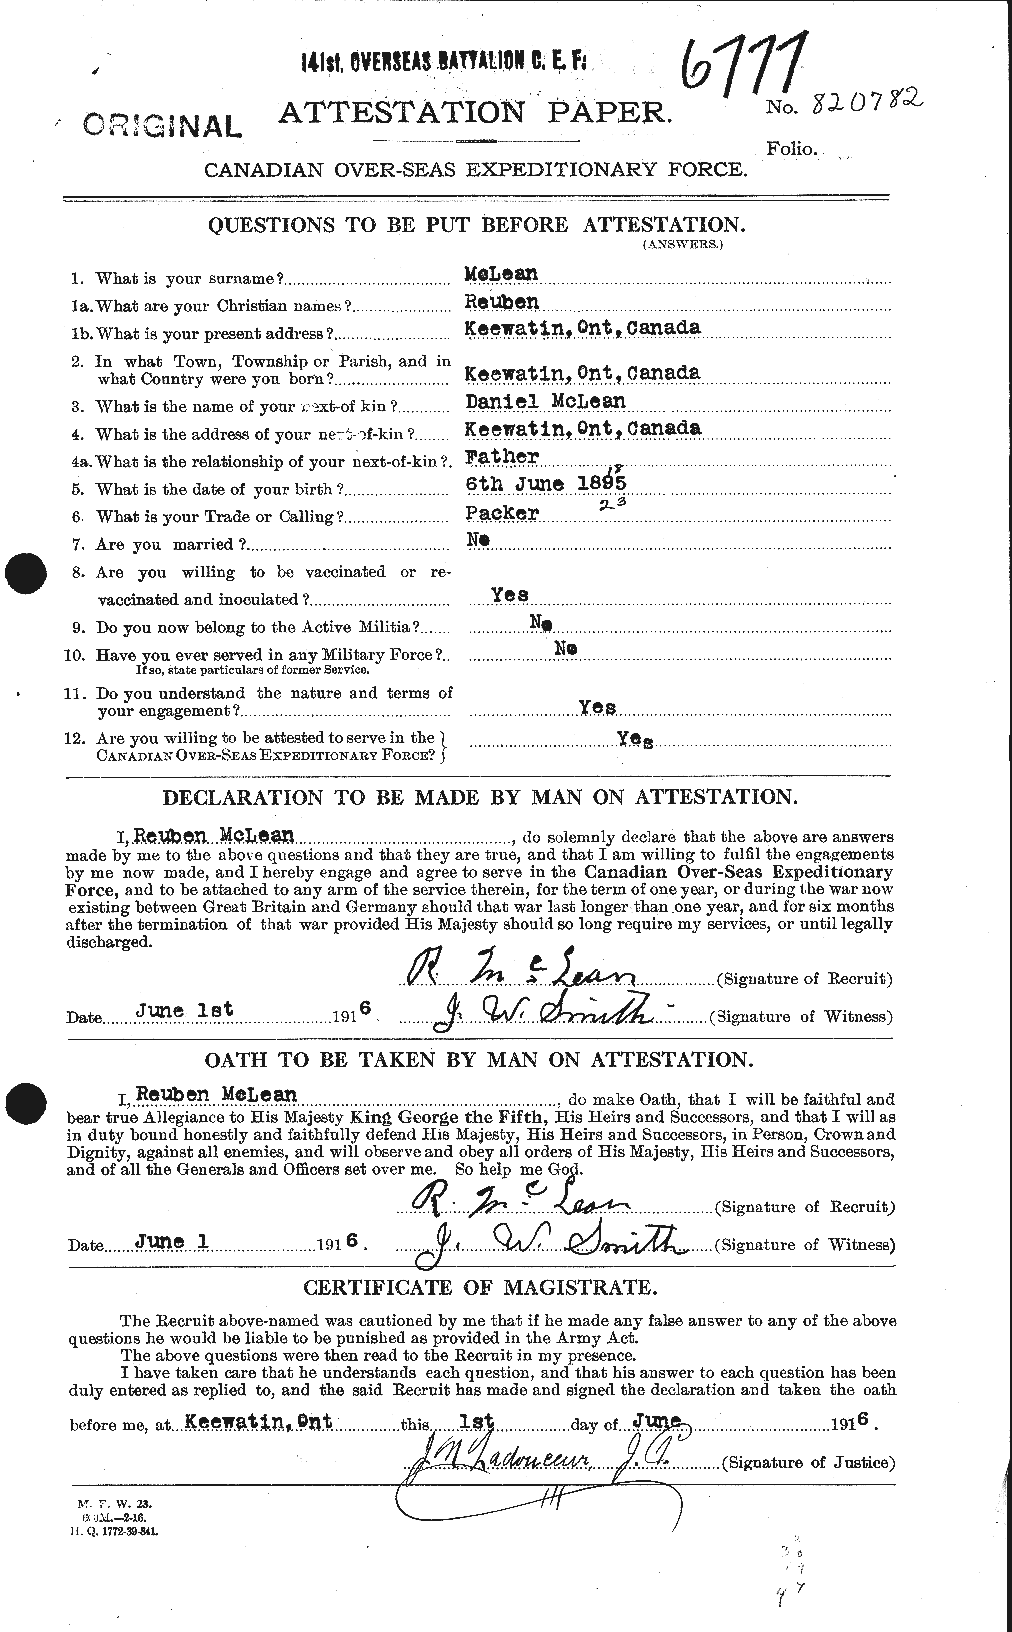 Dossiers du Personnel de la Première Guerre mondiale - CEC 533439a